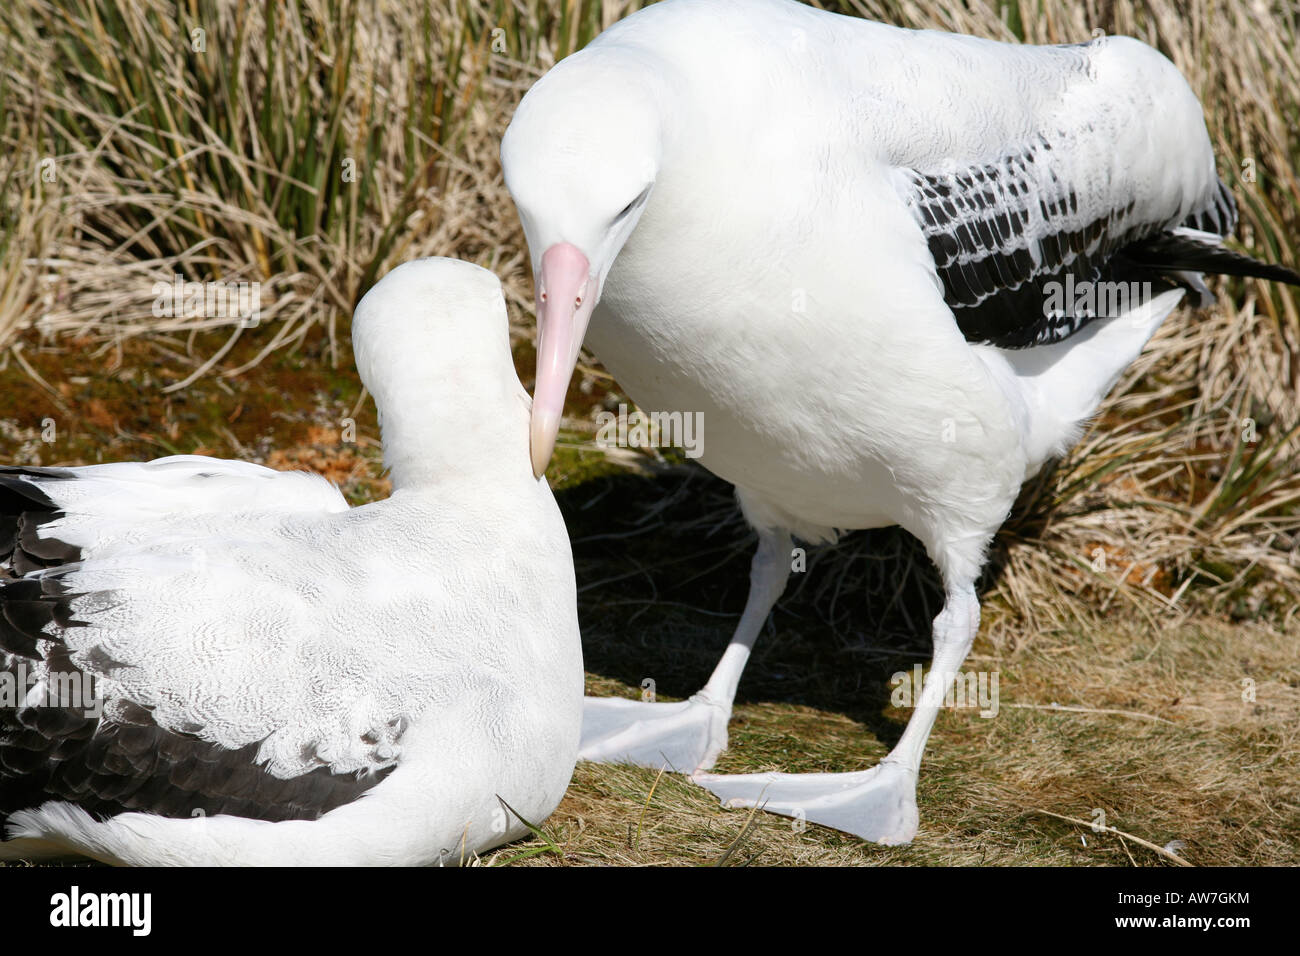 Albatros géant des couples s'accouplent pour jusqu'à 25 ans ensemble Banque D'Images